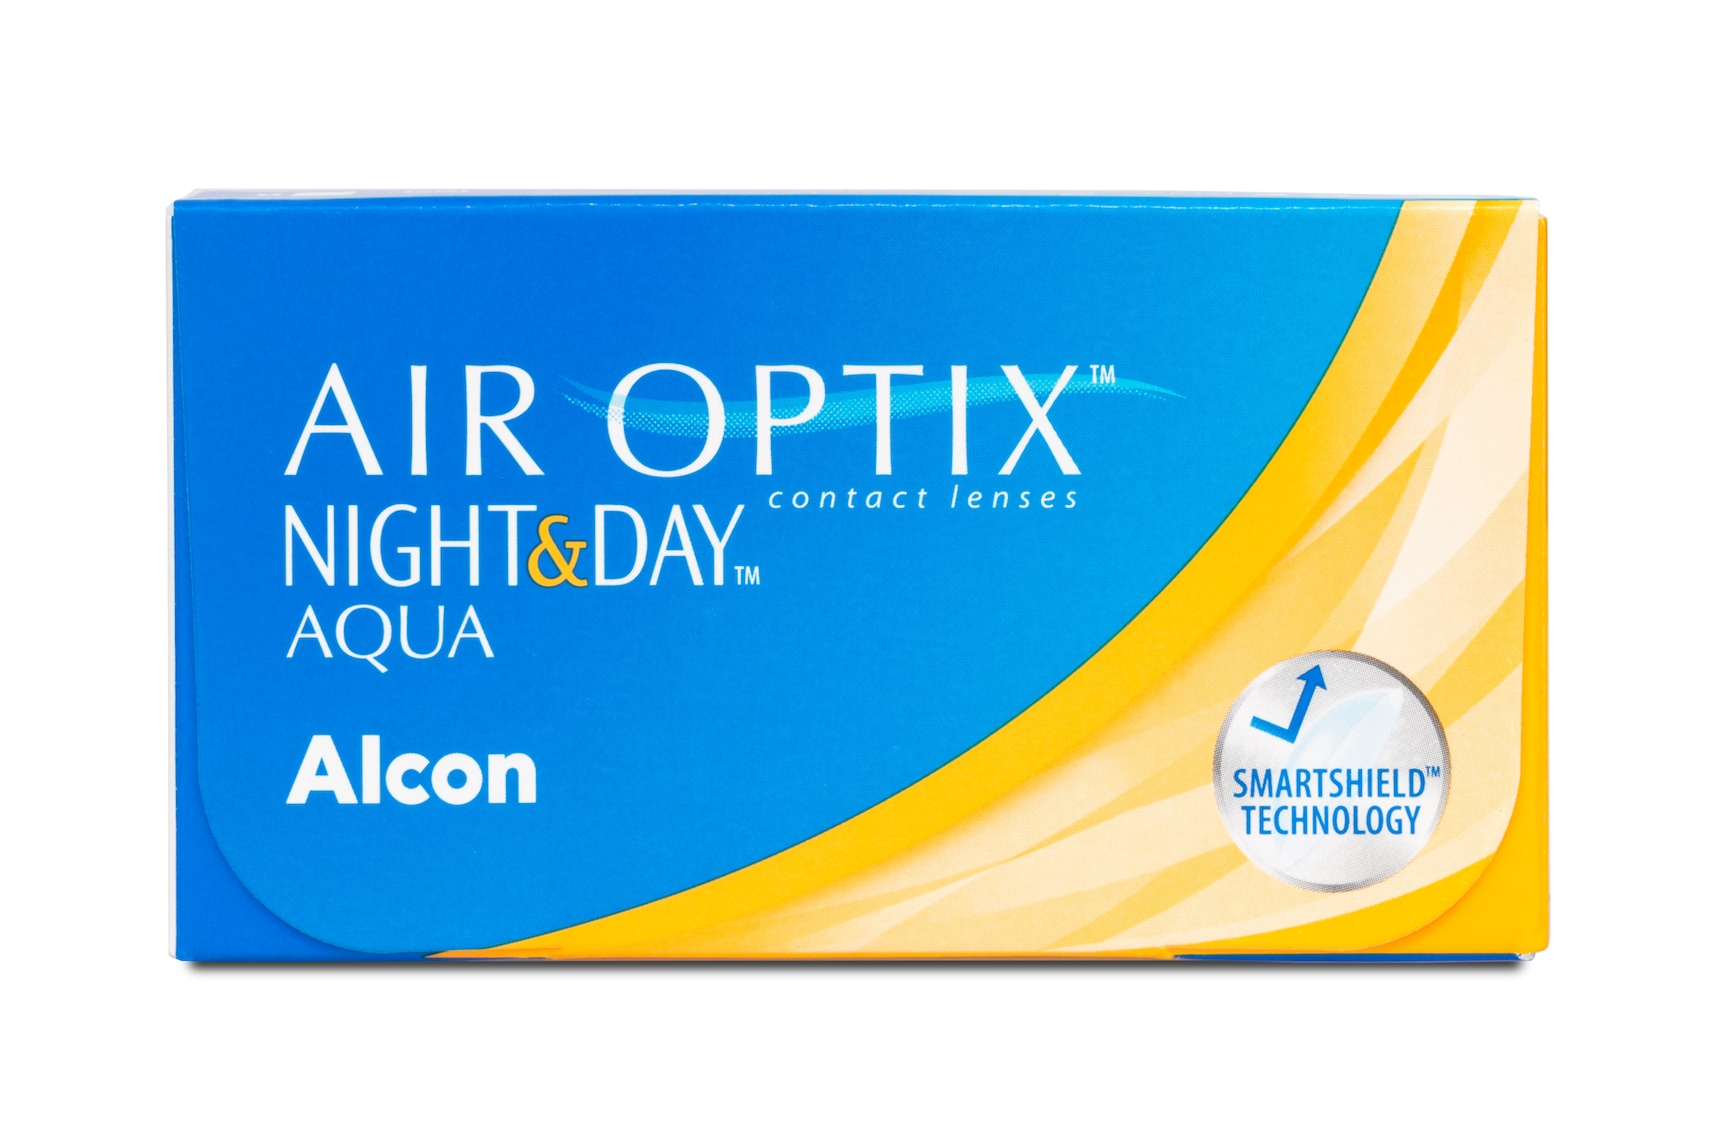 Air Optix Night & Day AQUA